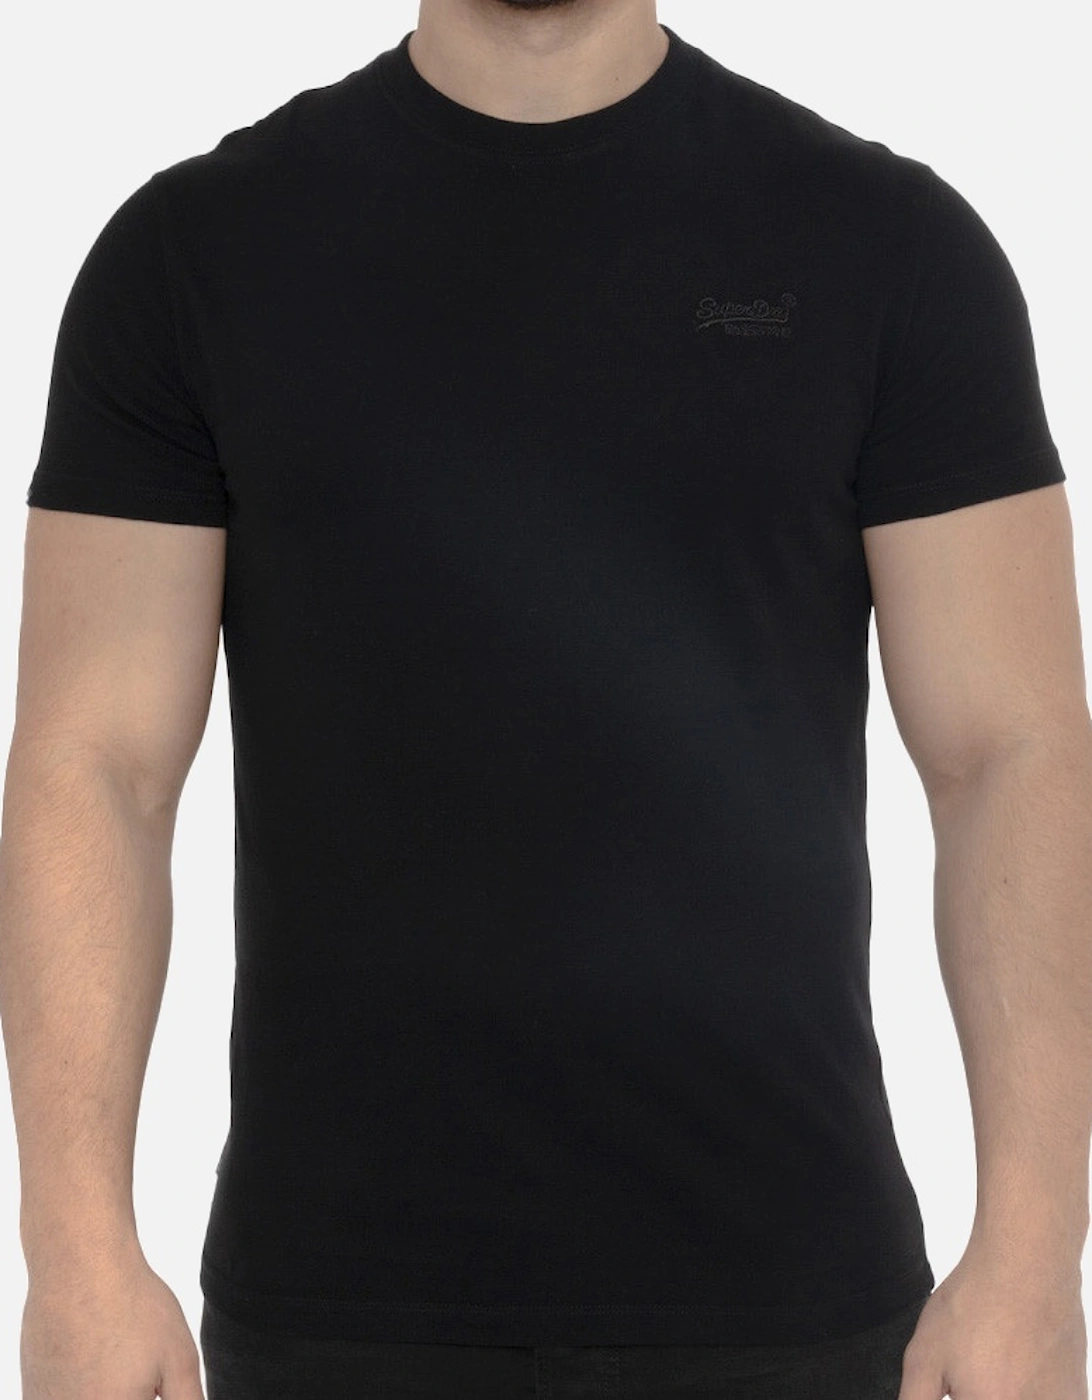 Mens Vintage Embroidered Logo T-Shirt (Black), 7 of 6